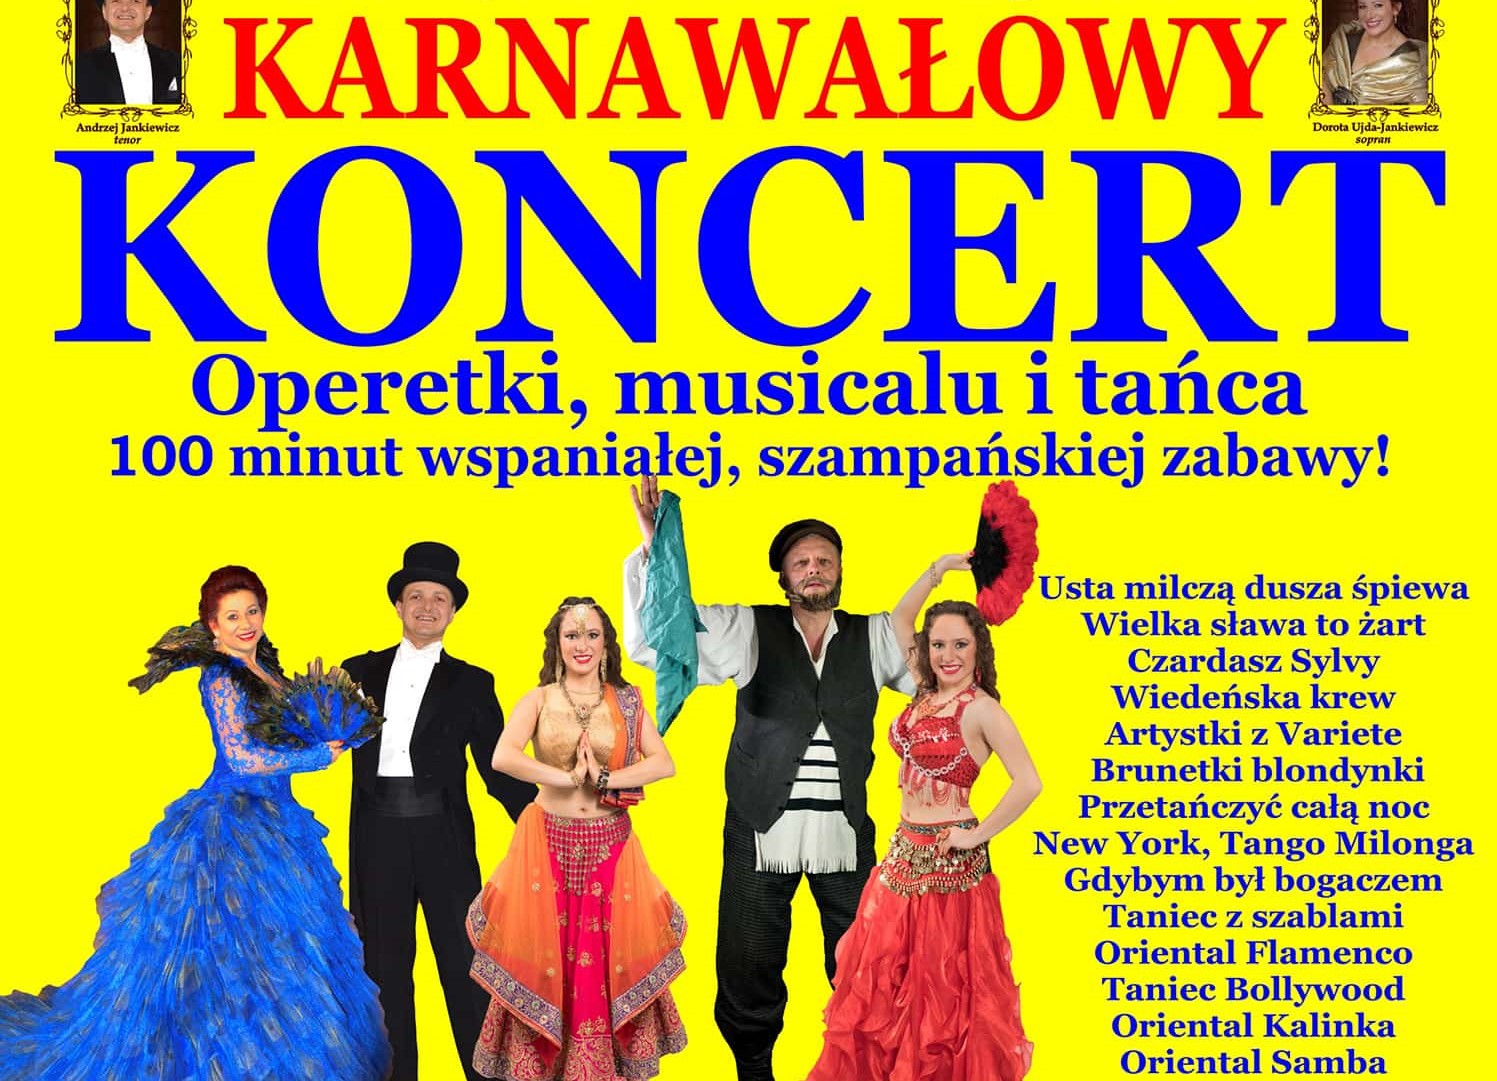 Karnawałowy Koncert Operetki, Musicalu i Tańca